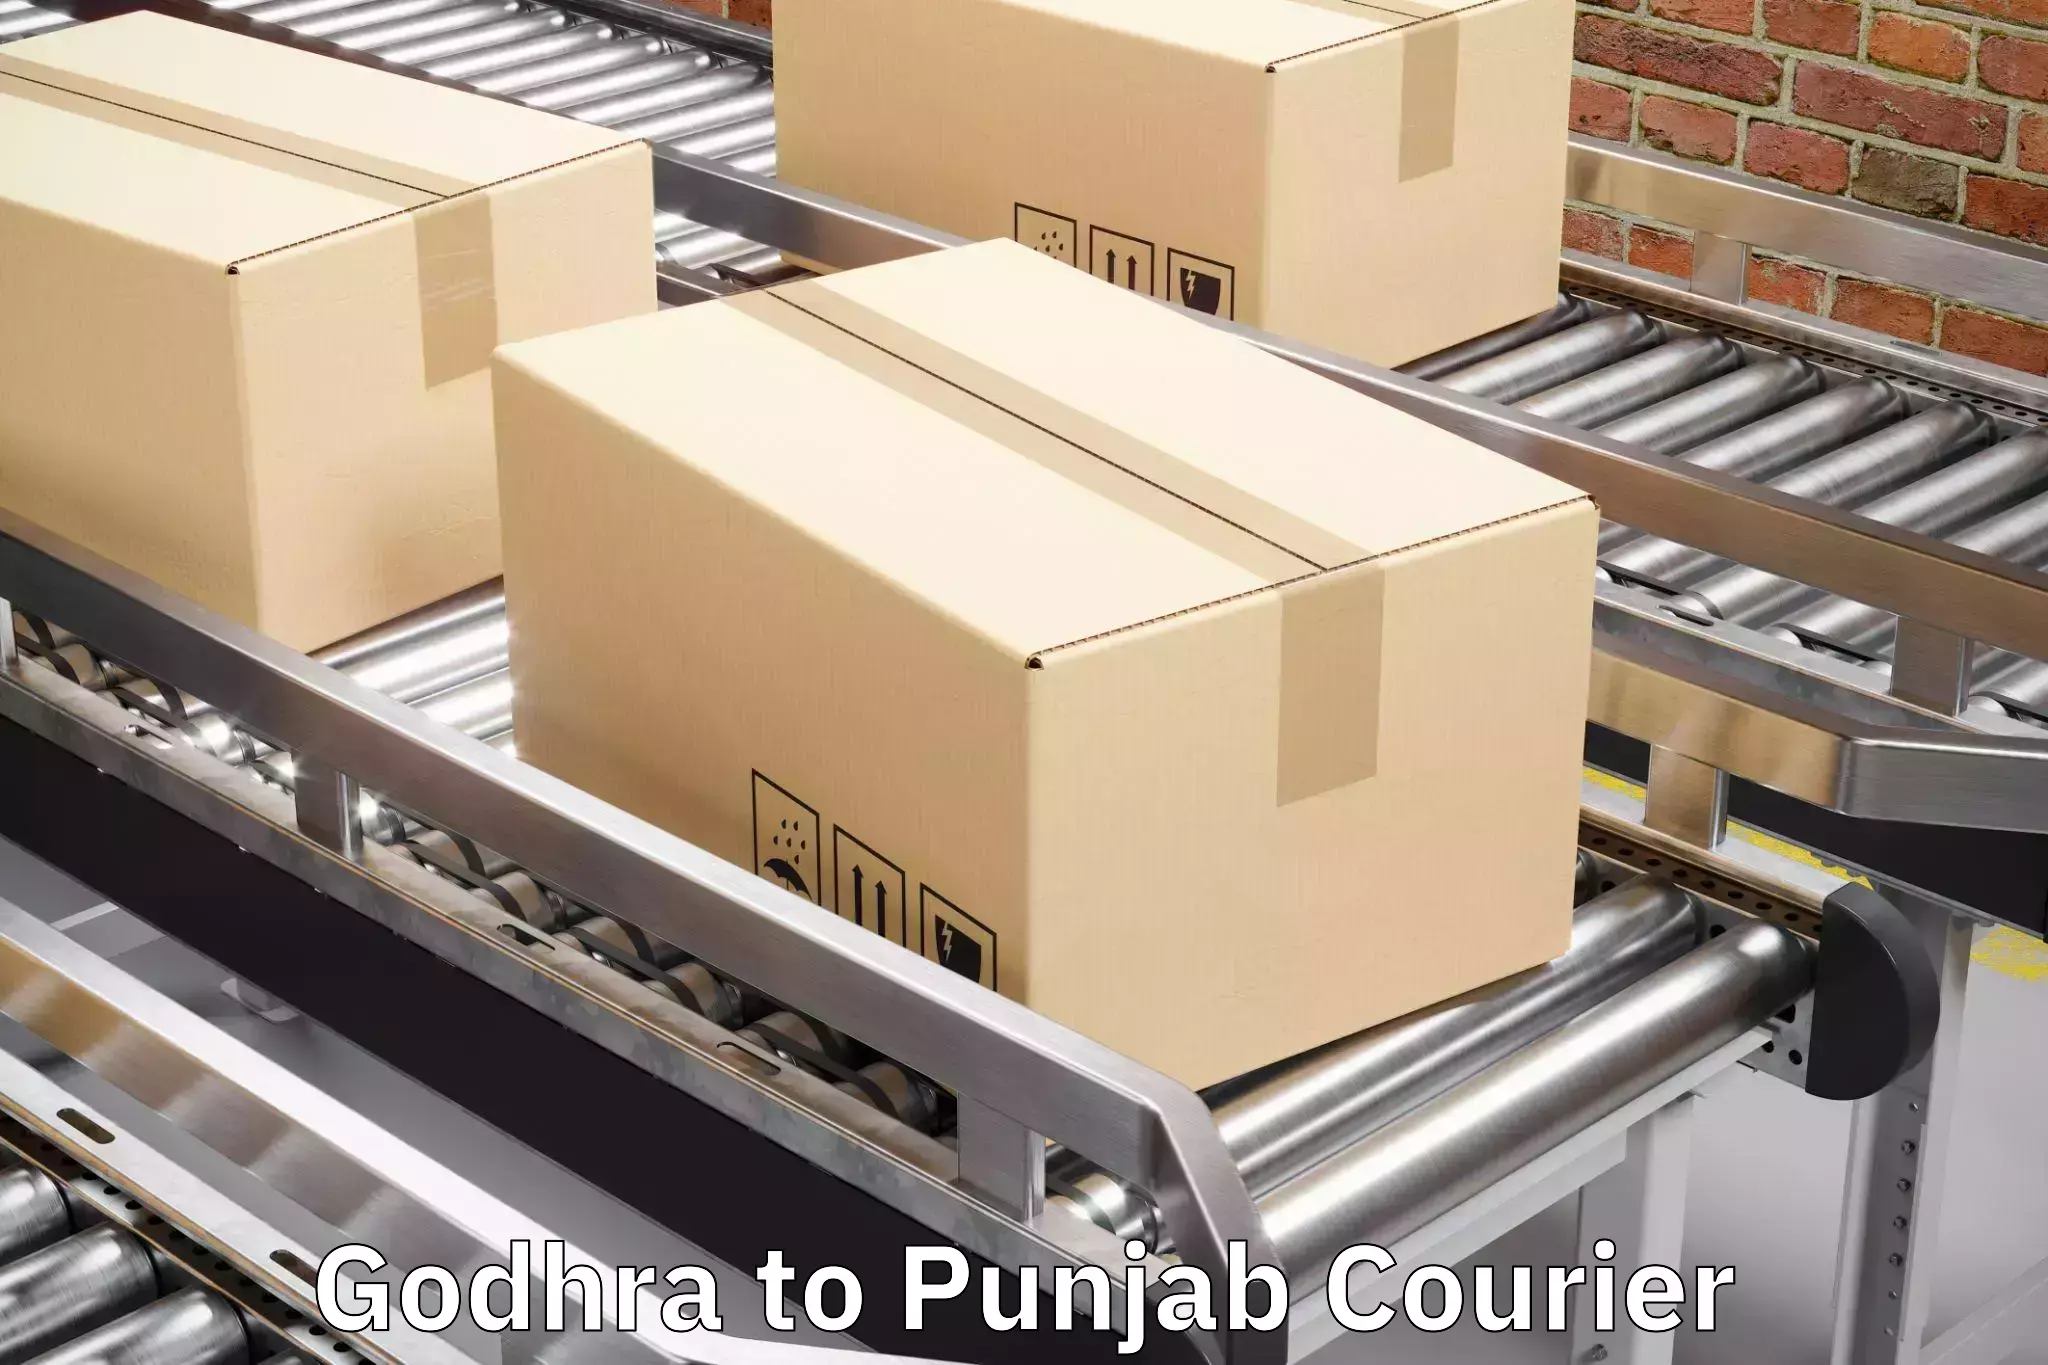 Luggage delivery optimization Godhra to Nawanshahr